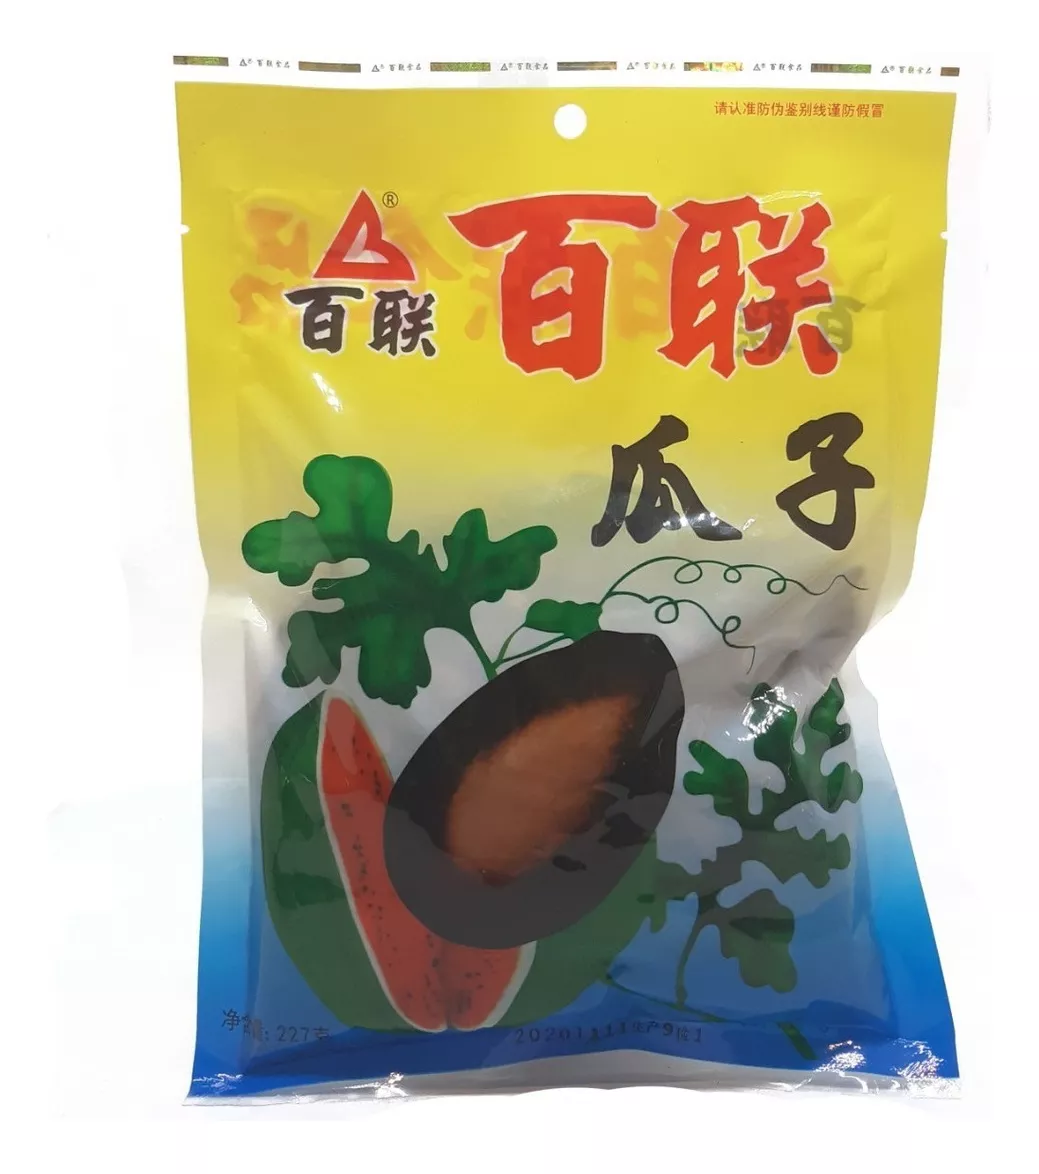 Primera imagen para búsqueda de snacks chinos